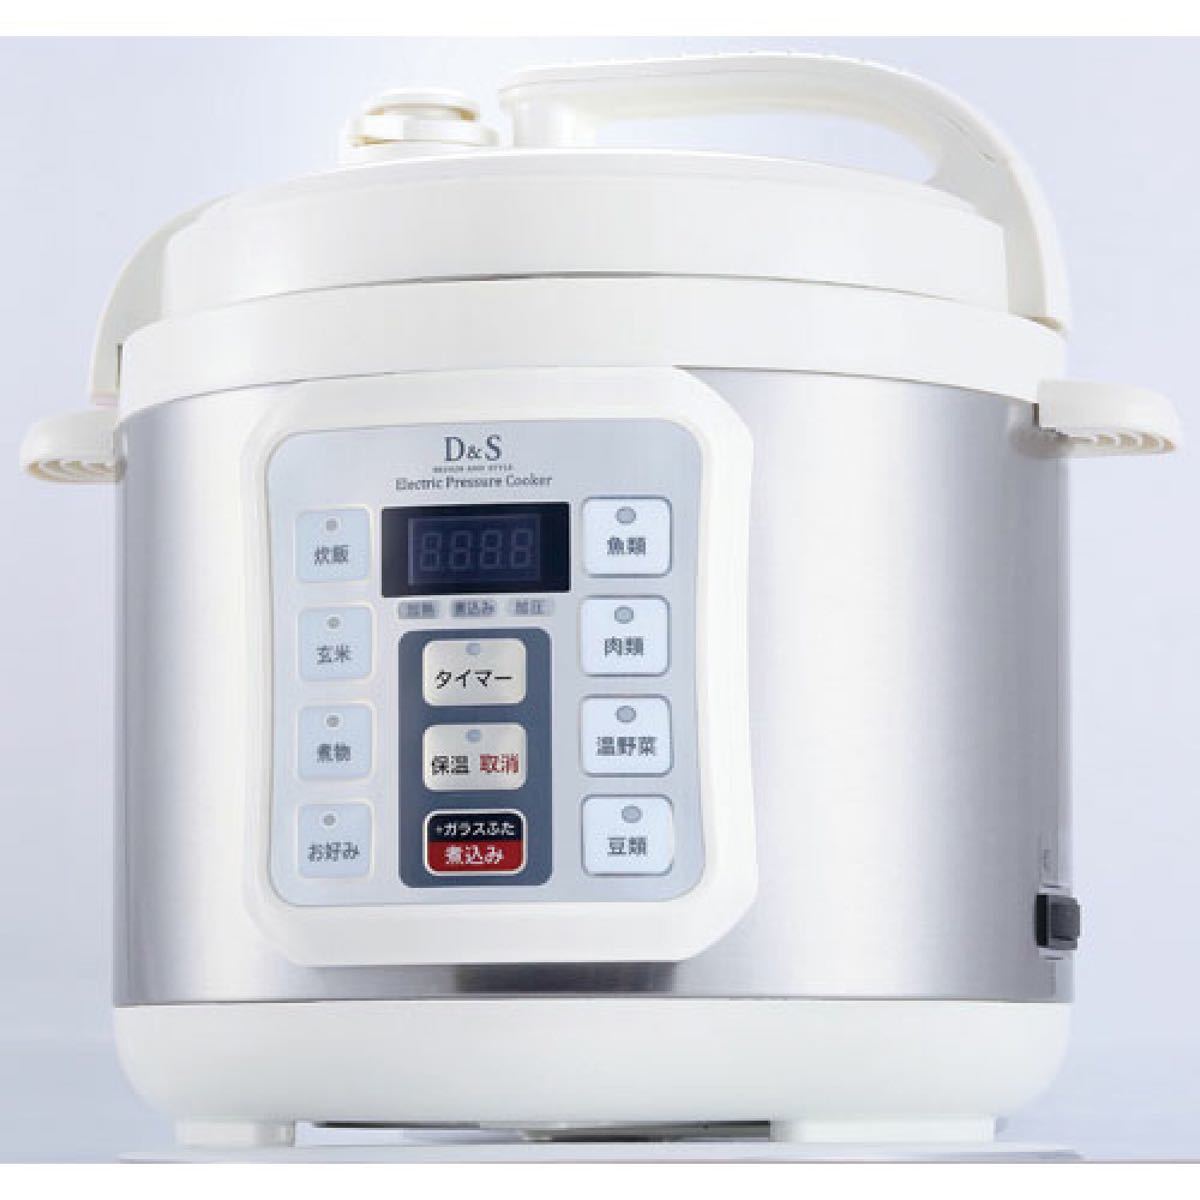 【未使用】D&S 家庭用マイコン電気圧力鍋 4.0L STL-EC01